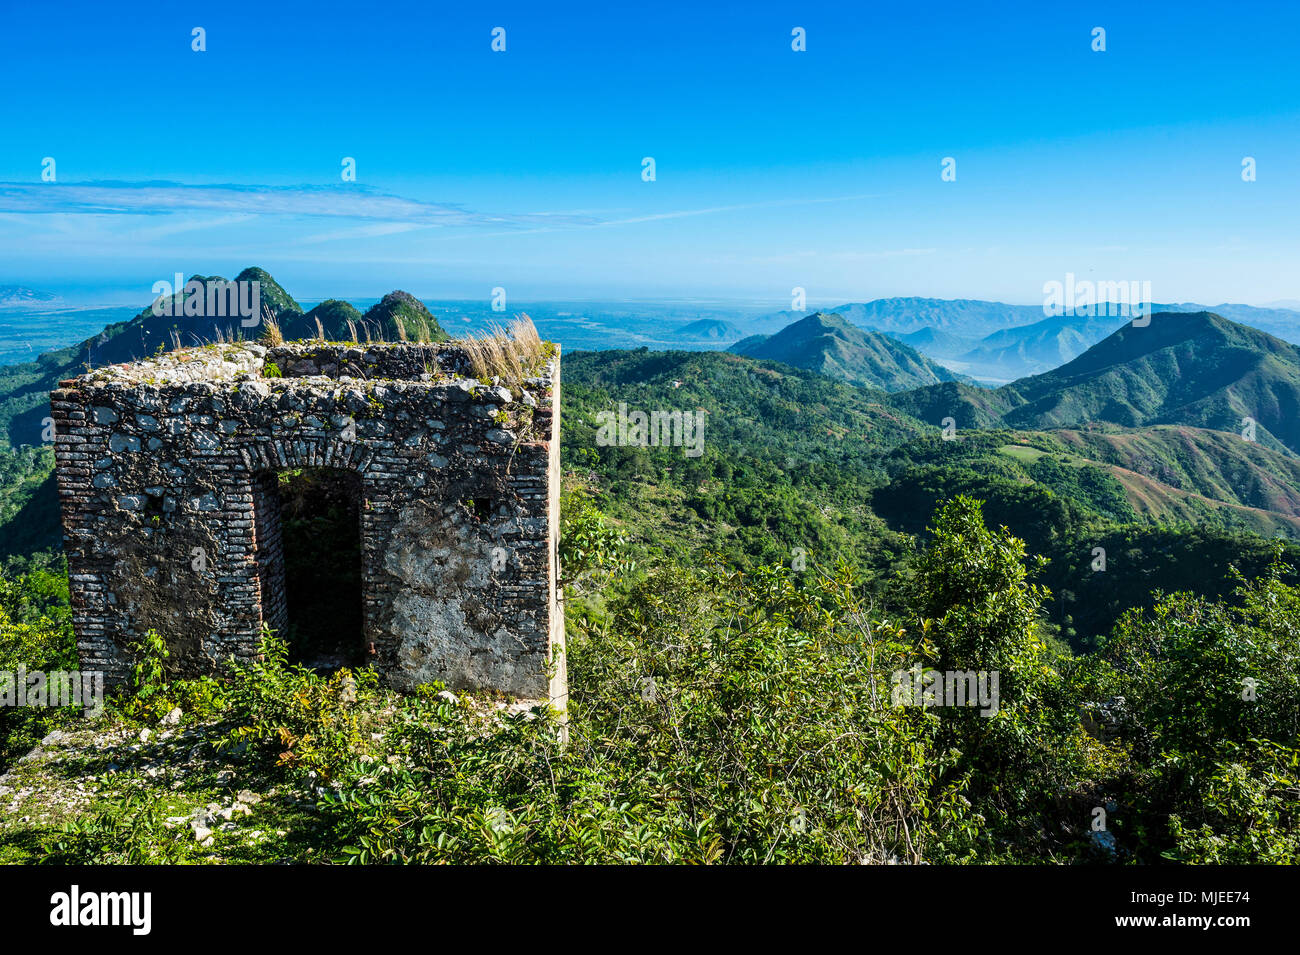 Donnent sur les belles montagnes au patrimoine mondial de l'Unesco autour de la vue la Citadelle Laferrière, Cap-Haïtien, Haïti, Caraïbes Banque D'Images